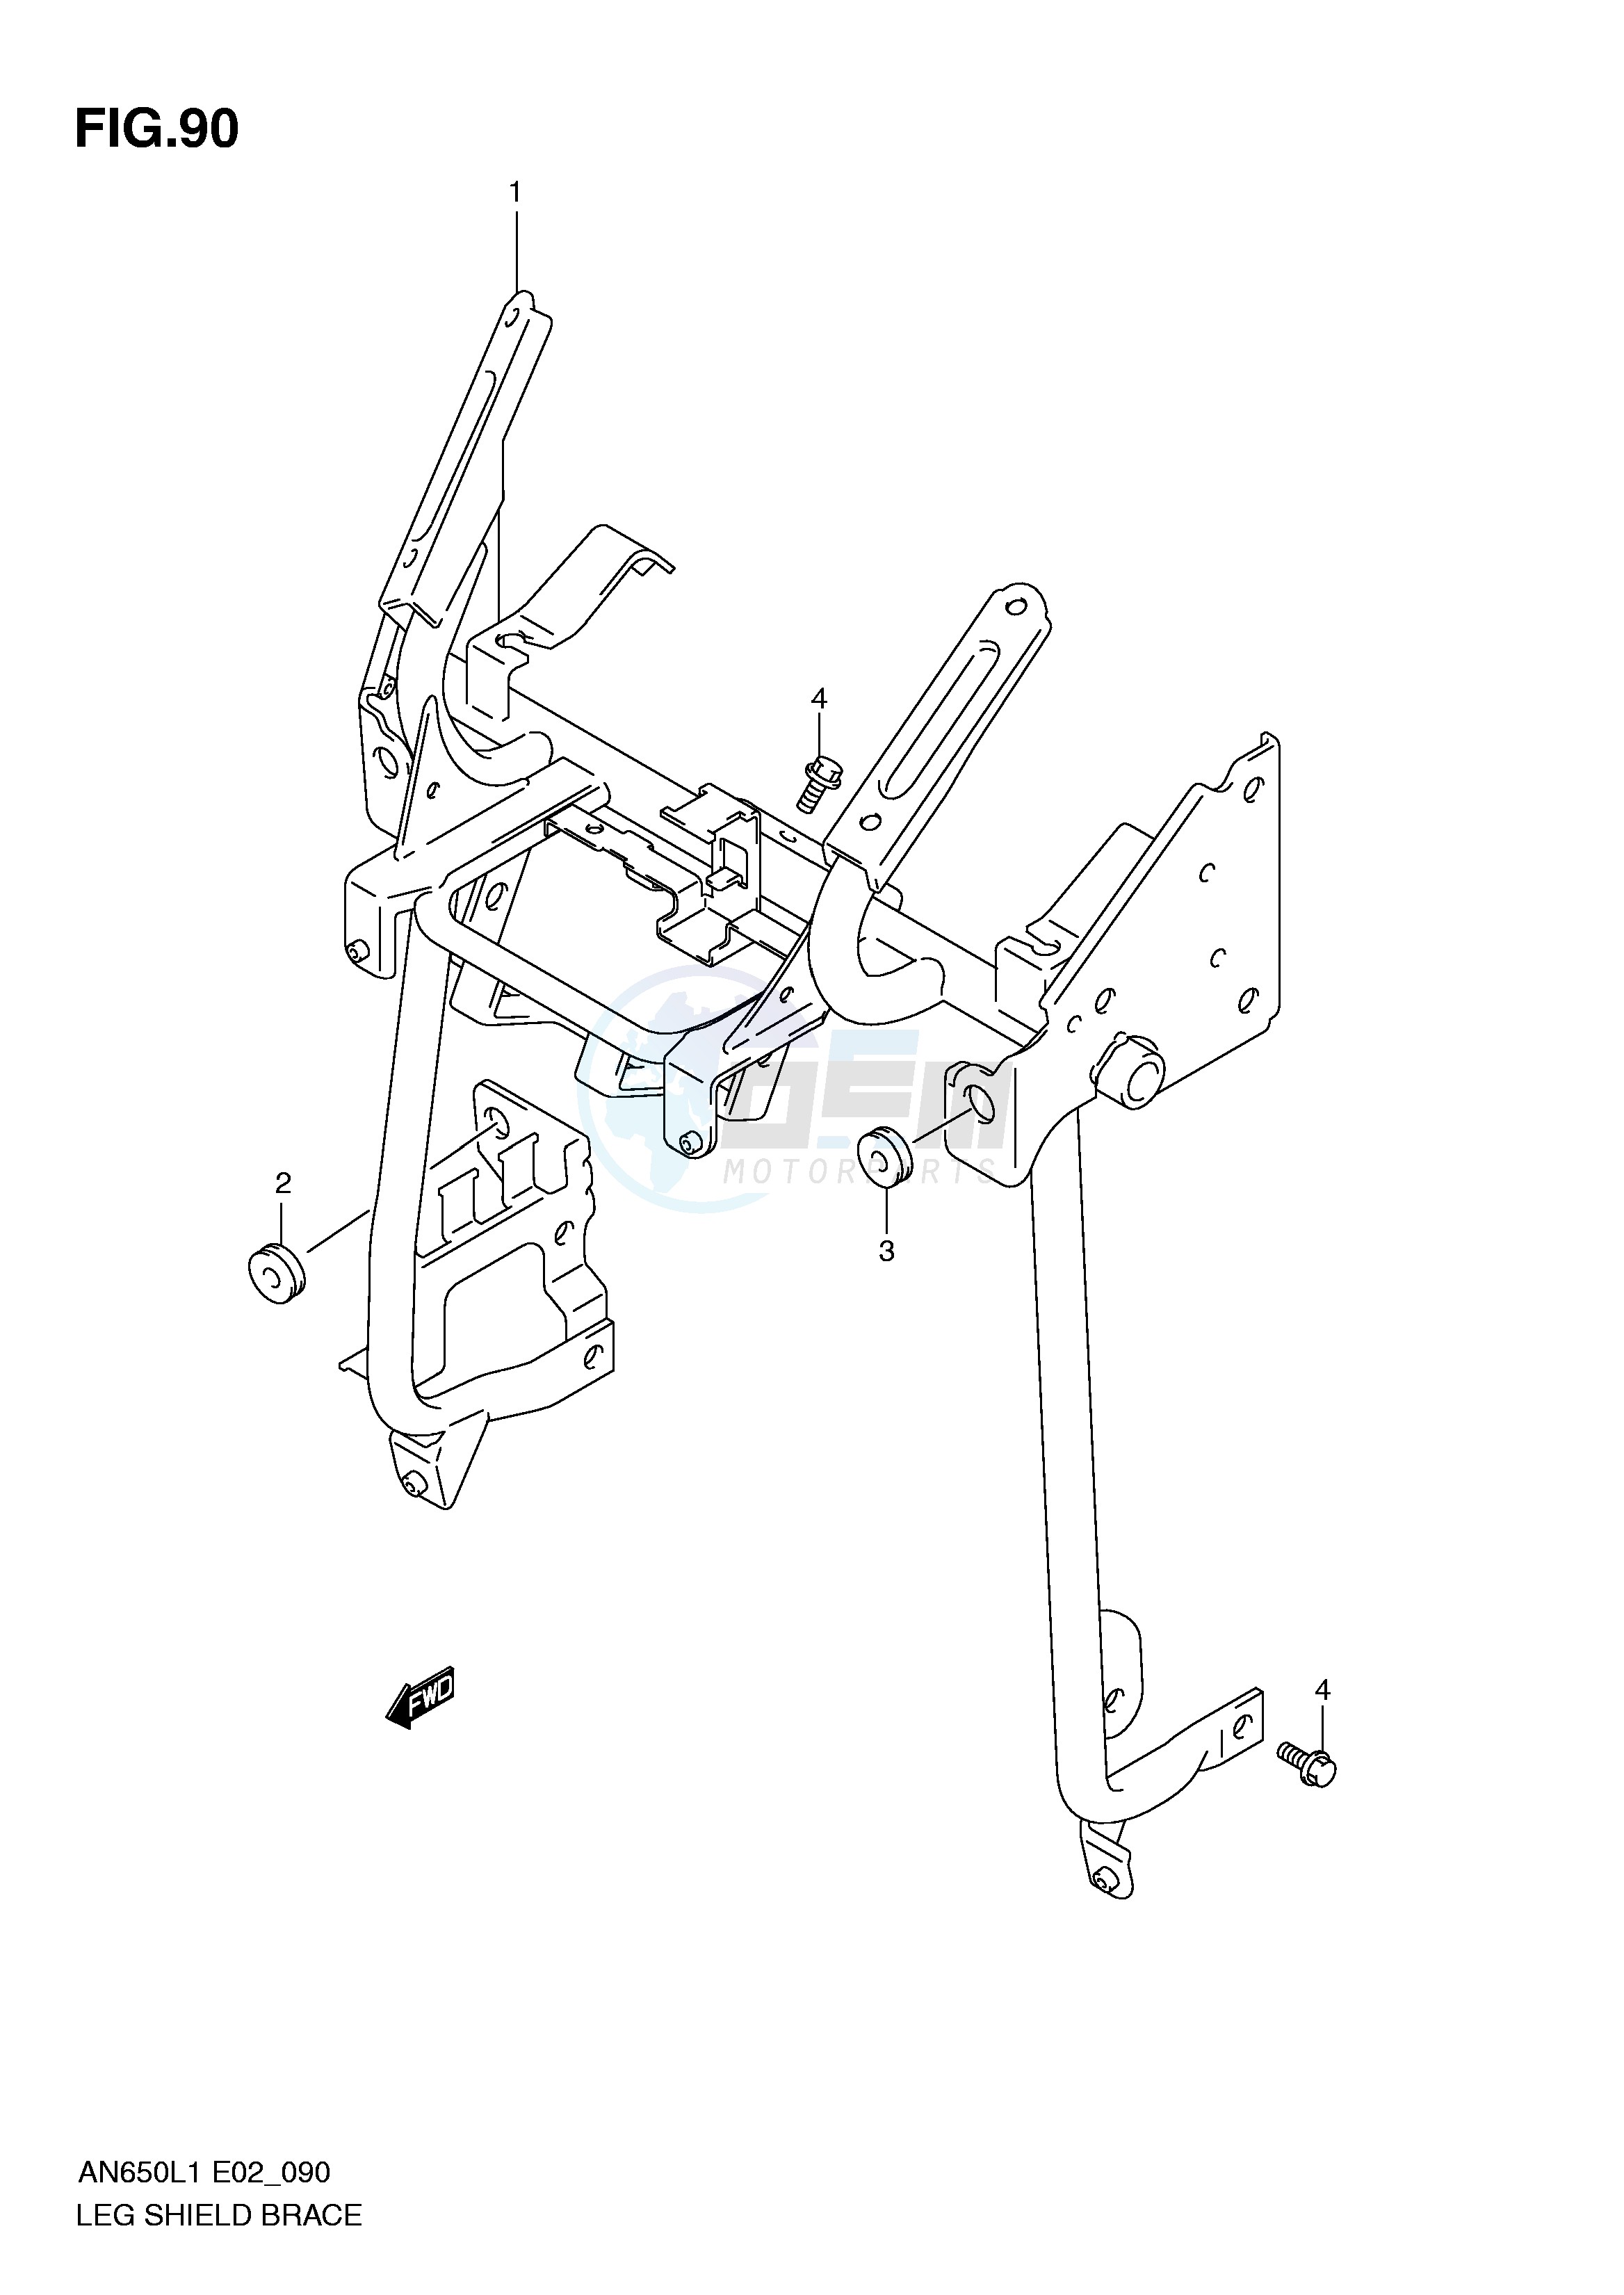 LEG SHIELD BRACE (AN650L1 E19) blueprint